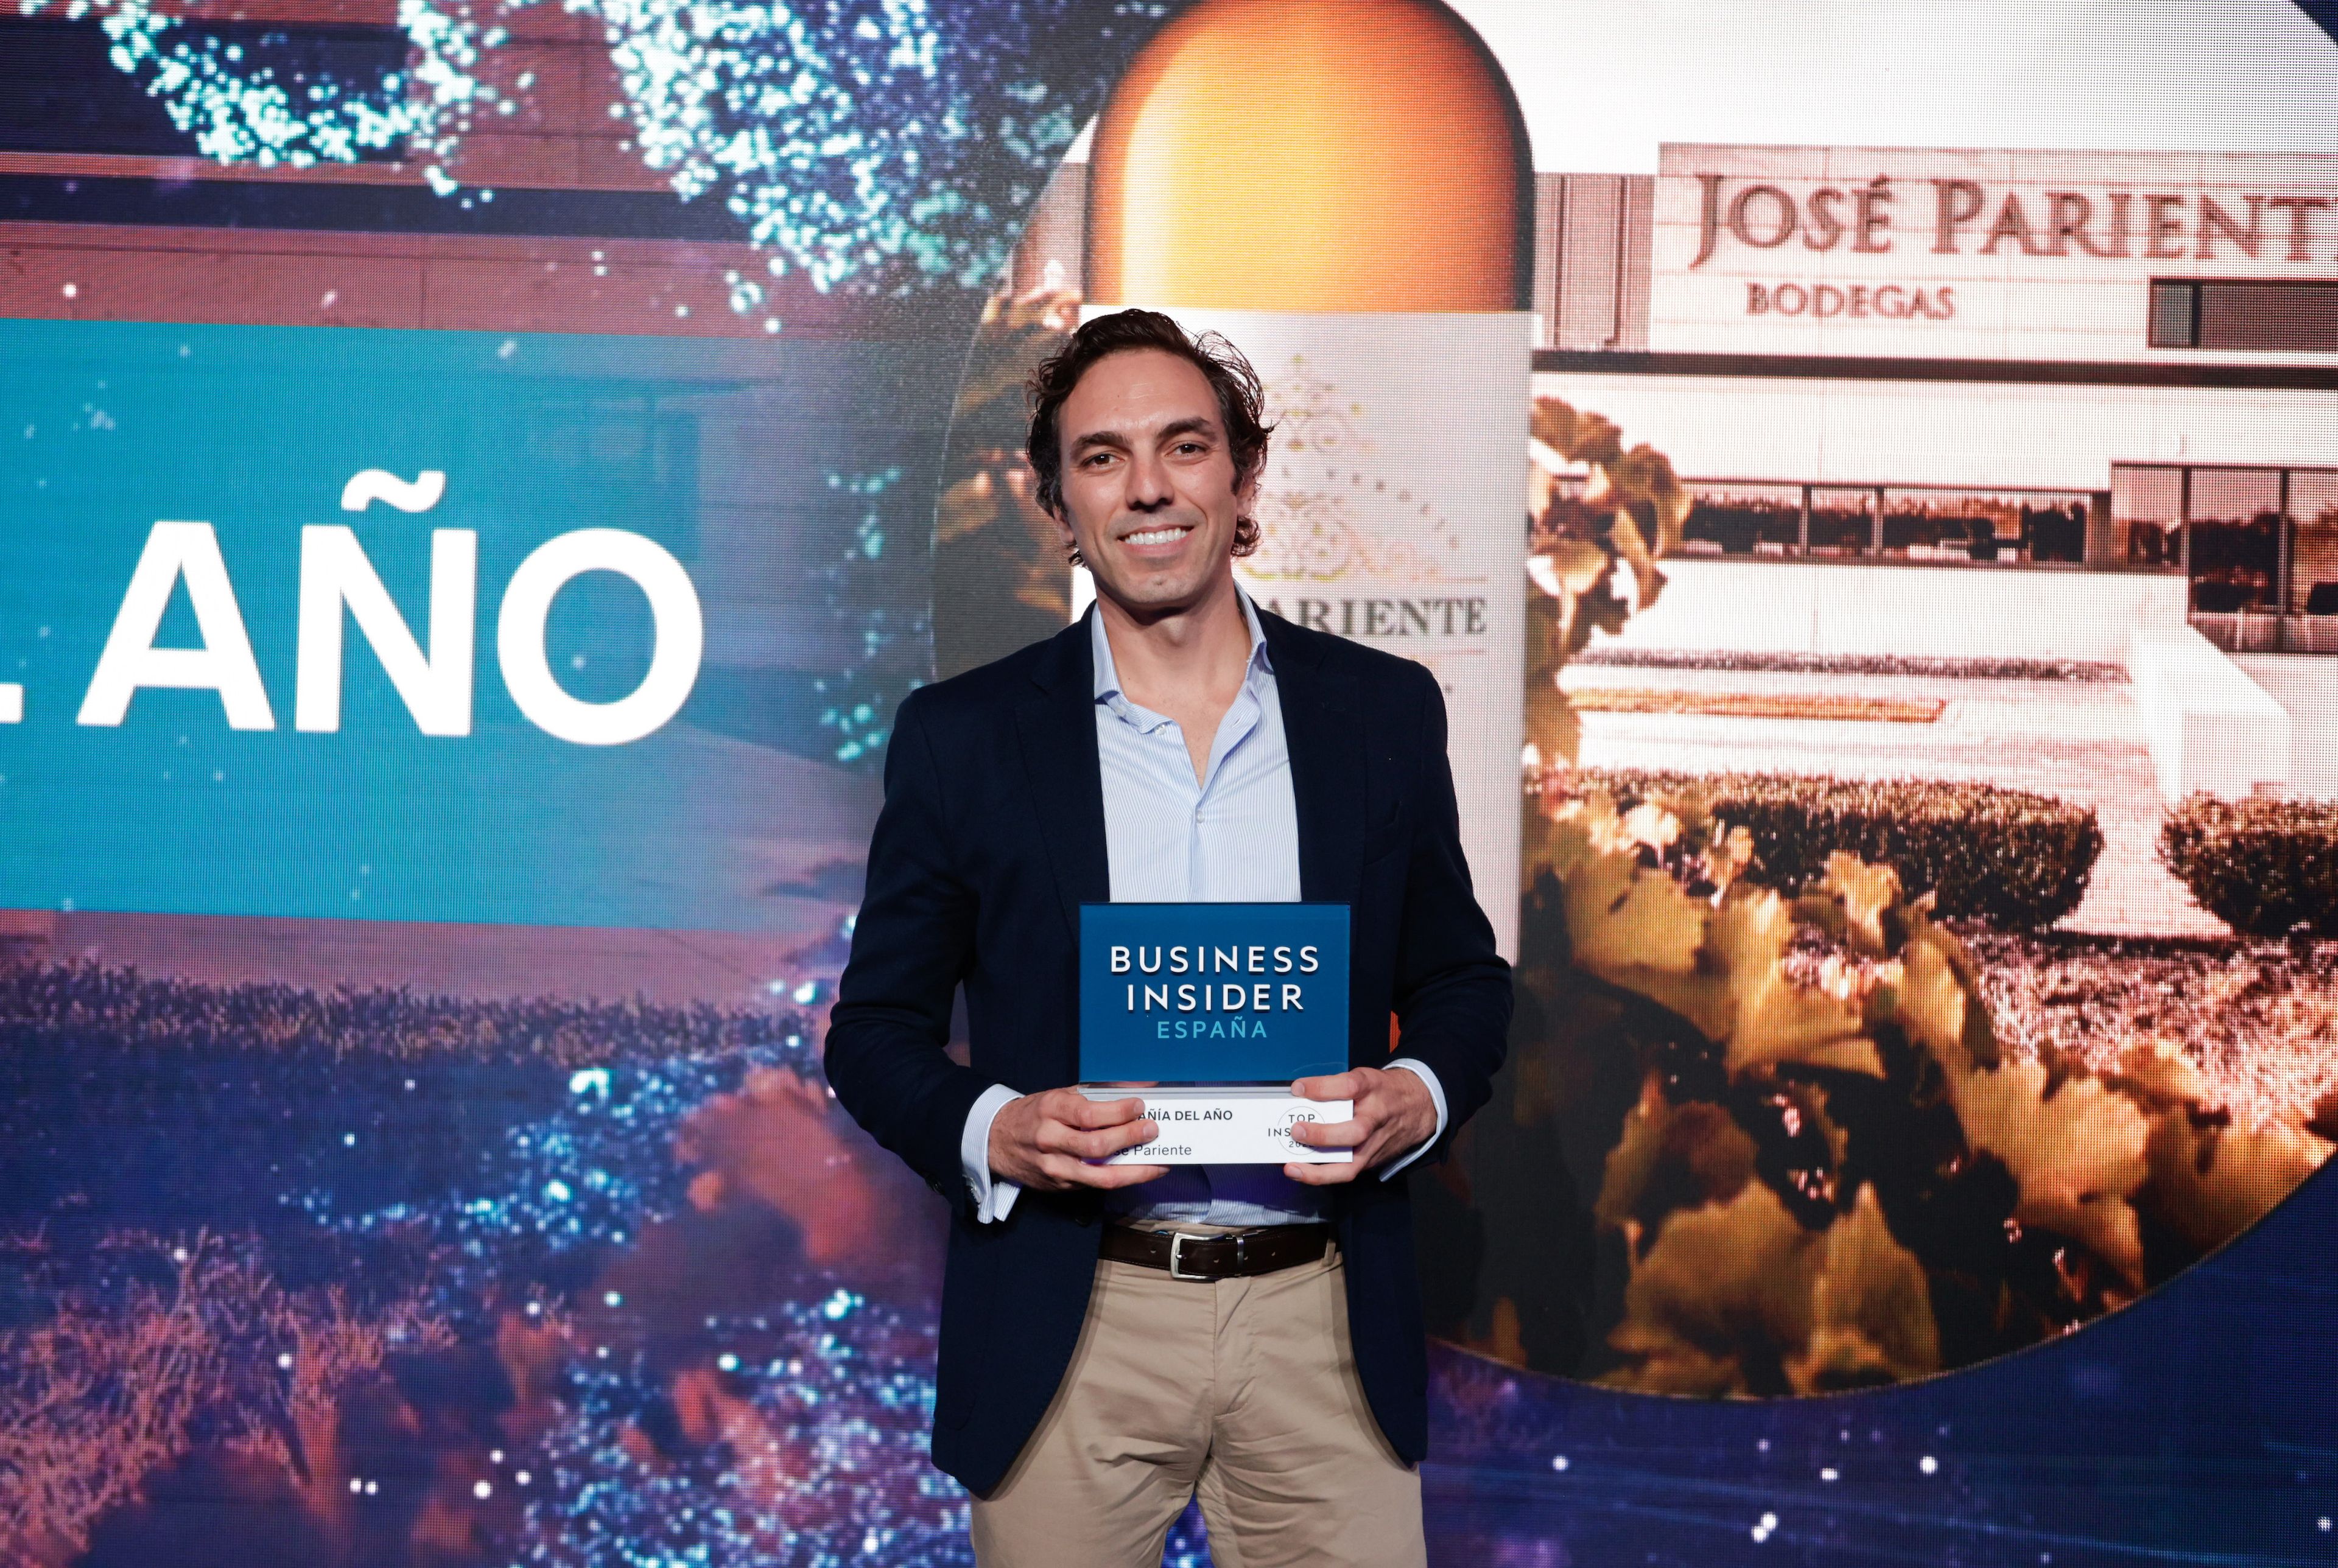 Ignacio Prieto, CEO de Bodegas José Pariente, en los premios Top Insiders.